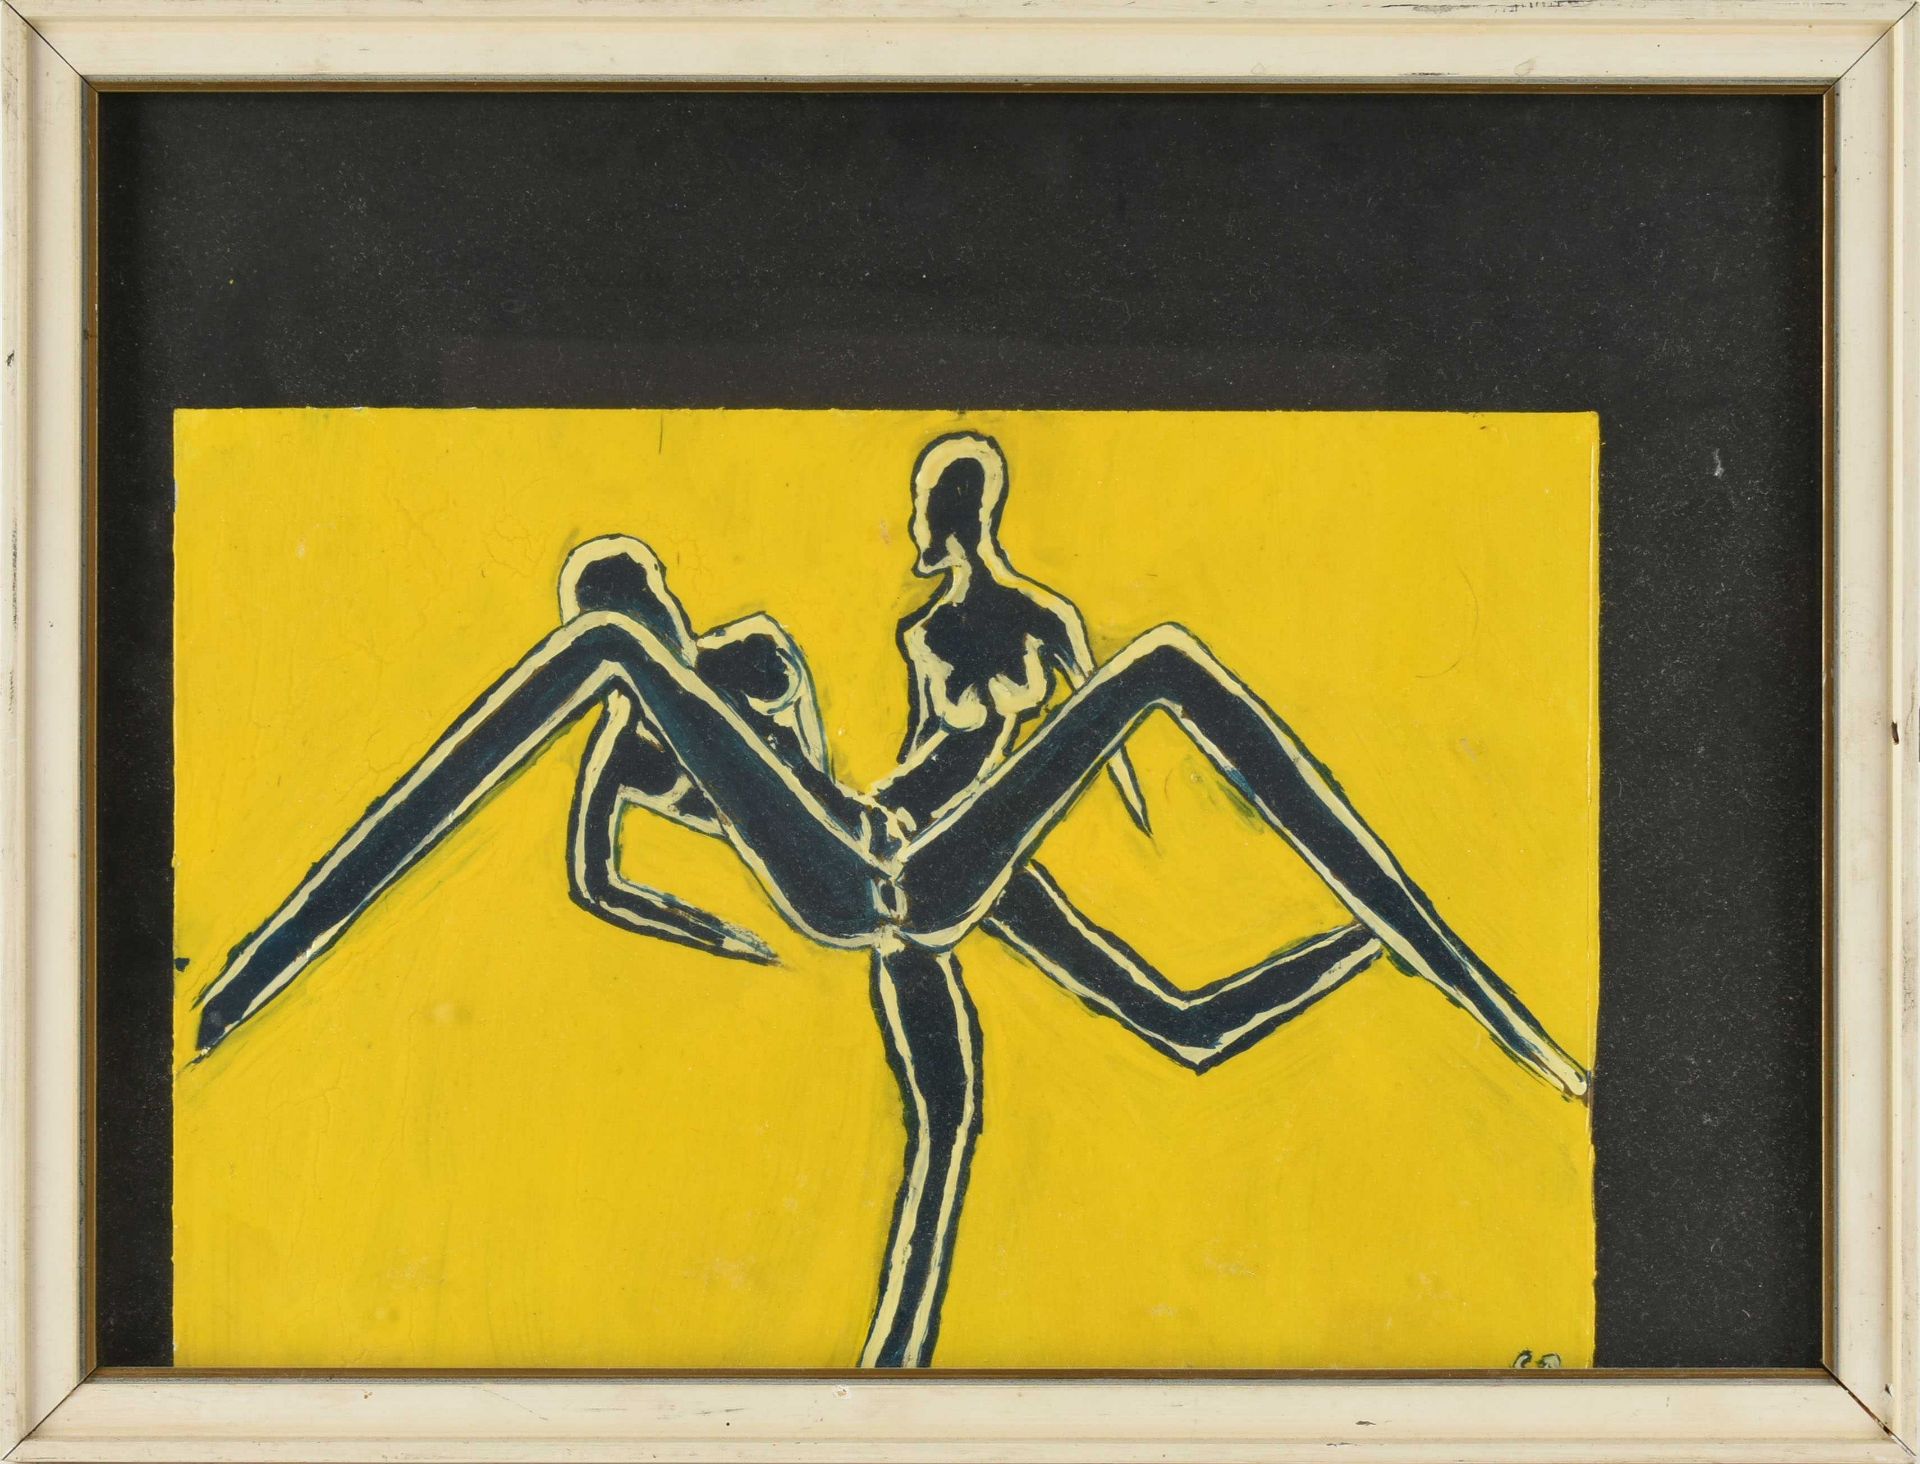 Monogrammiert hochglänzende Lackfarben auf Karton, Paar in erotischer Pose, vor leuchtend gelben - Bild 3 aus 4